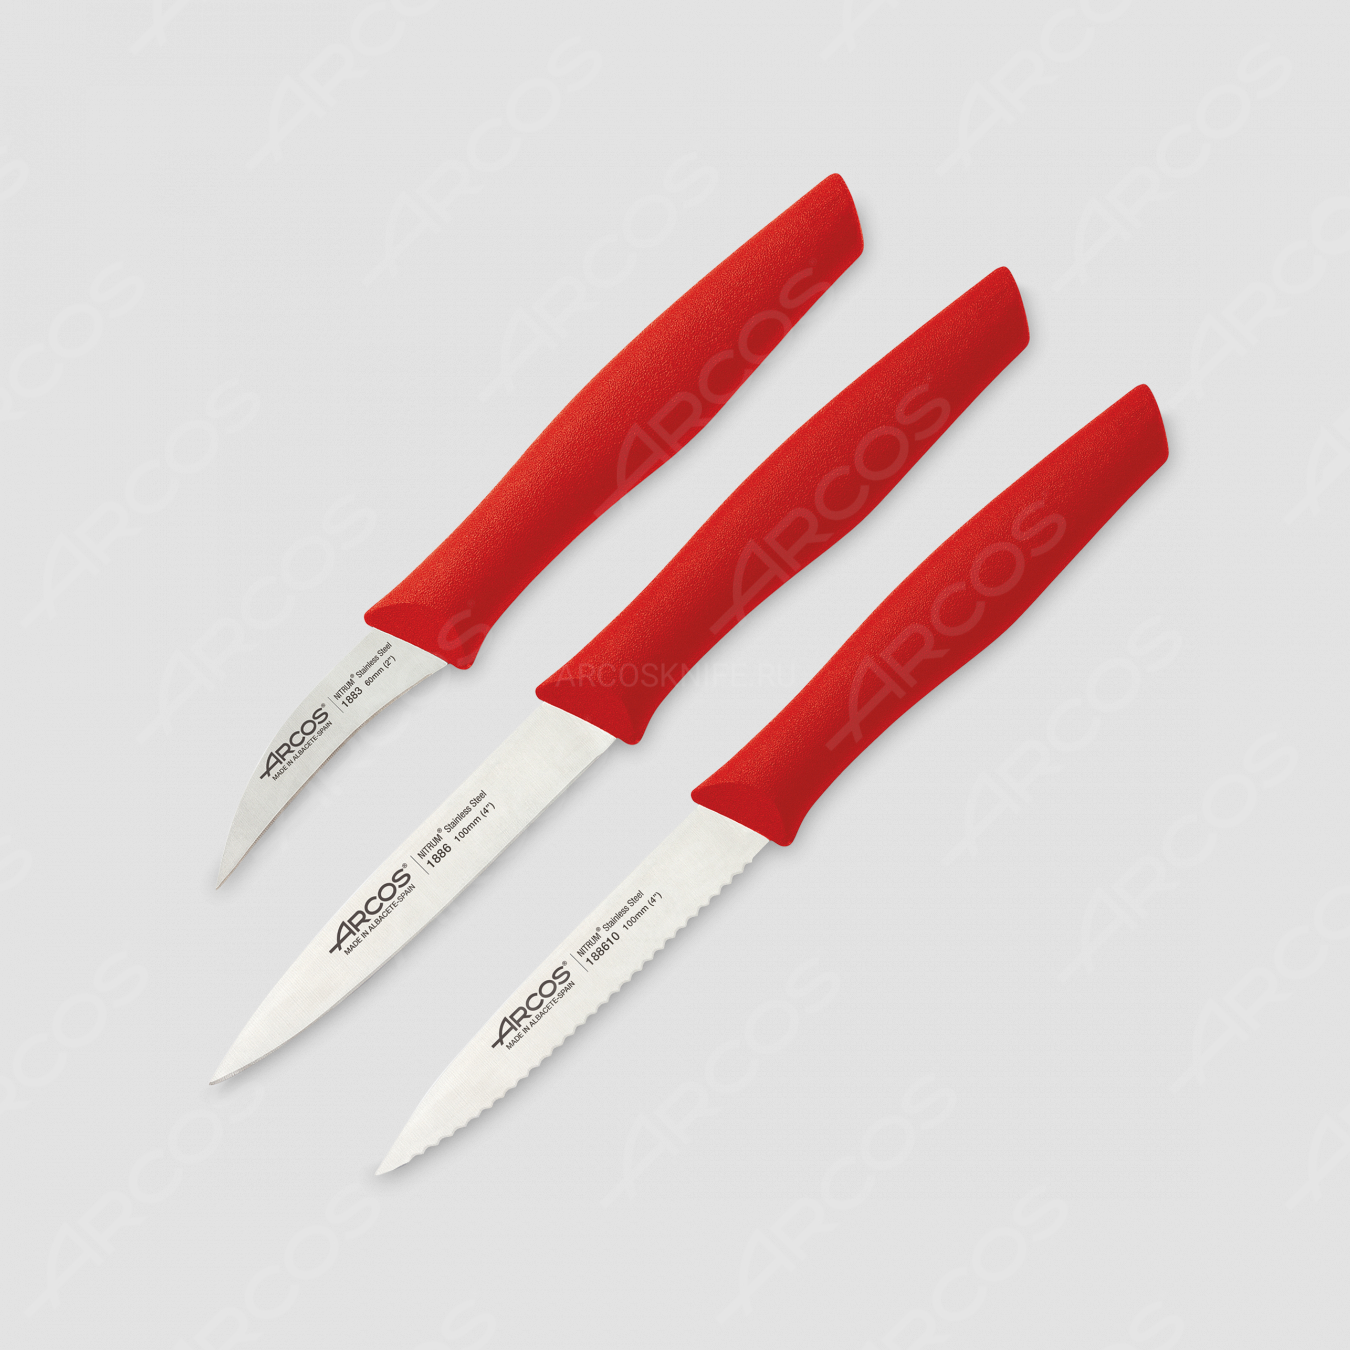 Набор из 3-х кухонных ножей для чистки и нарезки овощей, рукоять красная, серия Nova, ARCOS, Испания